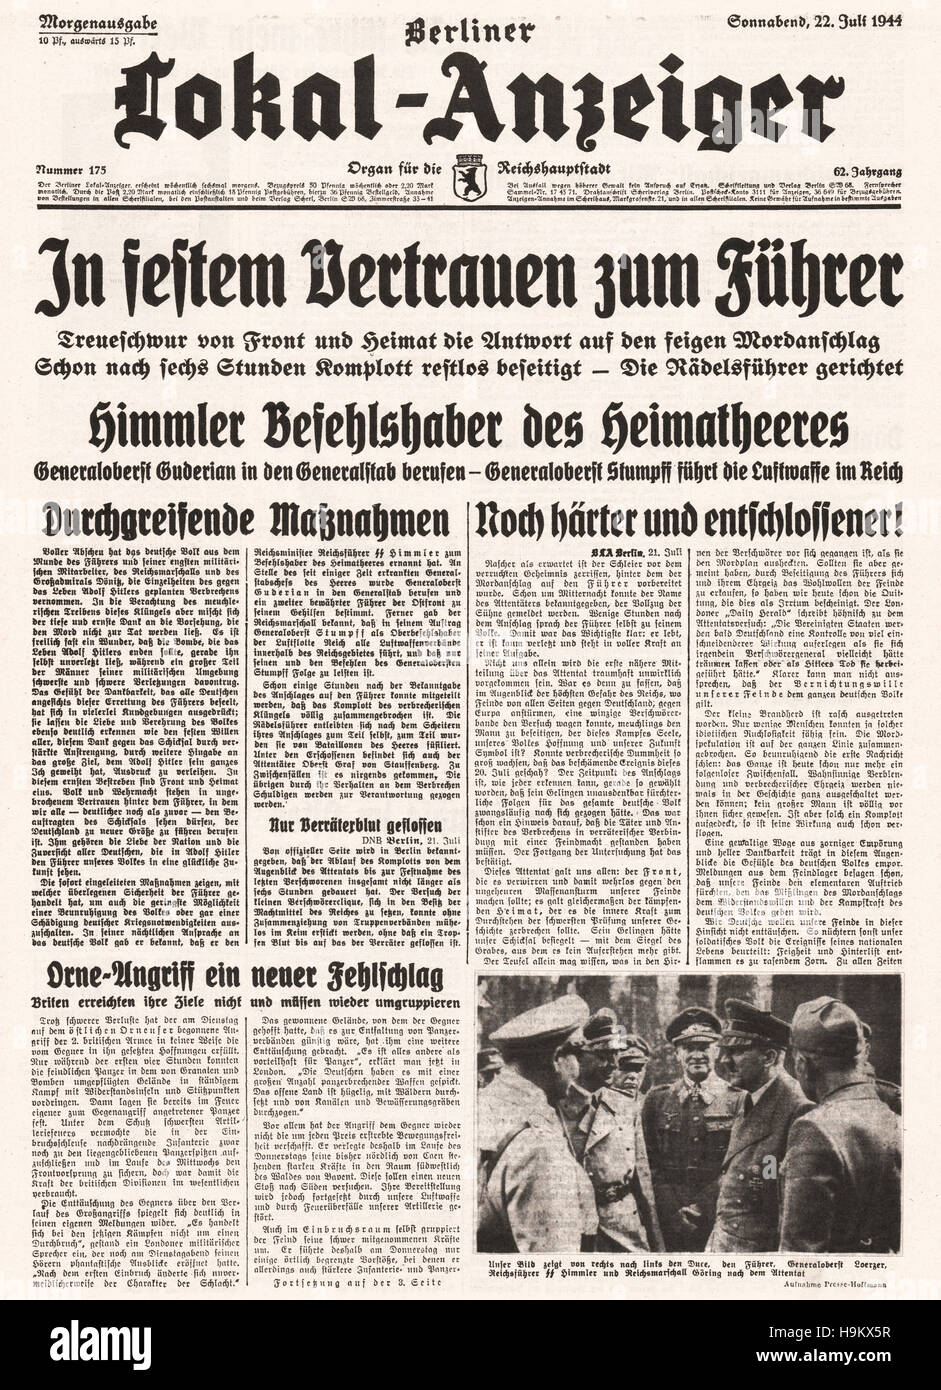 1944 Lokal Anzeiger Titelseite Berichterstattung des Attentats auf Adolf Hitler Stockfoto